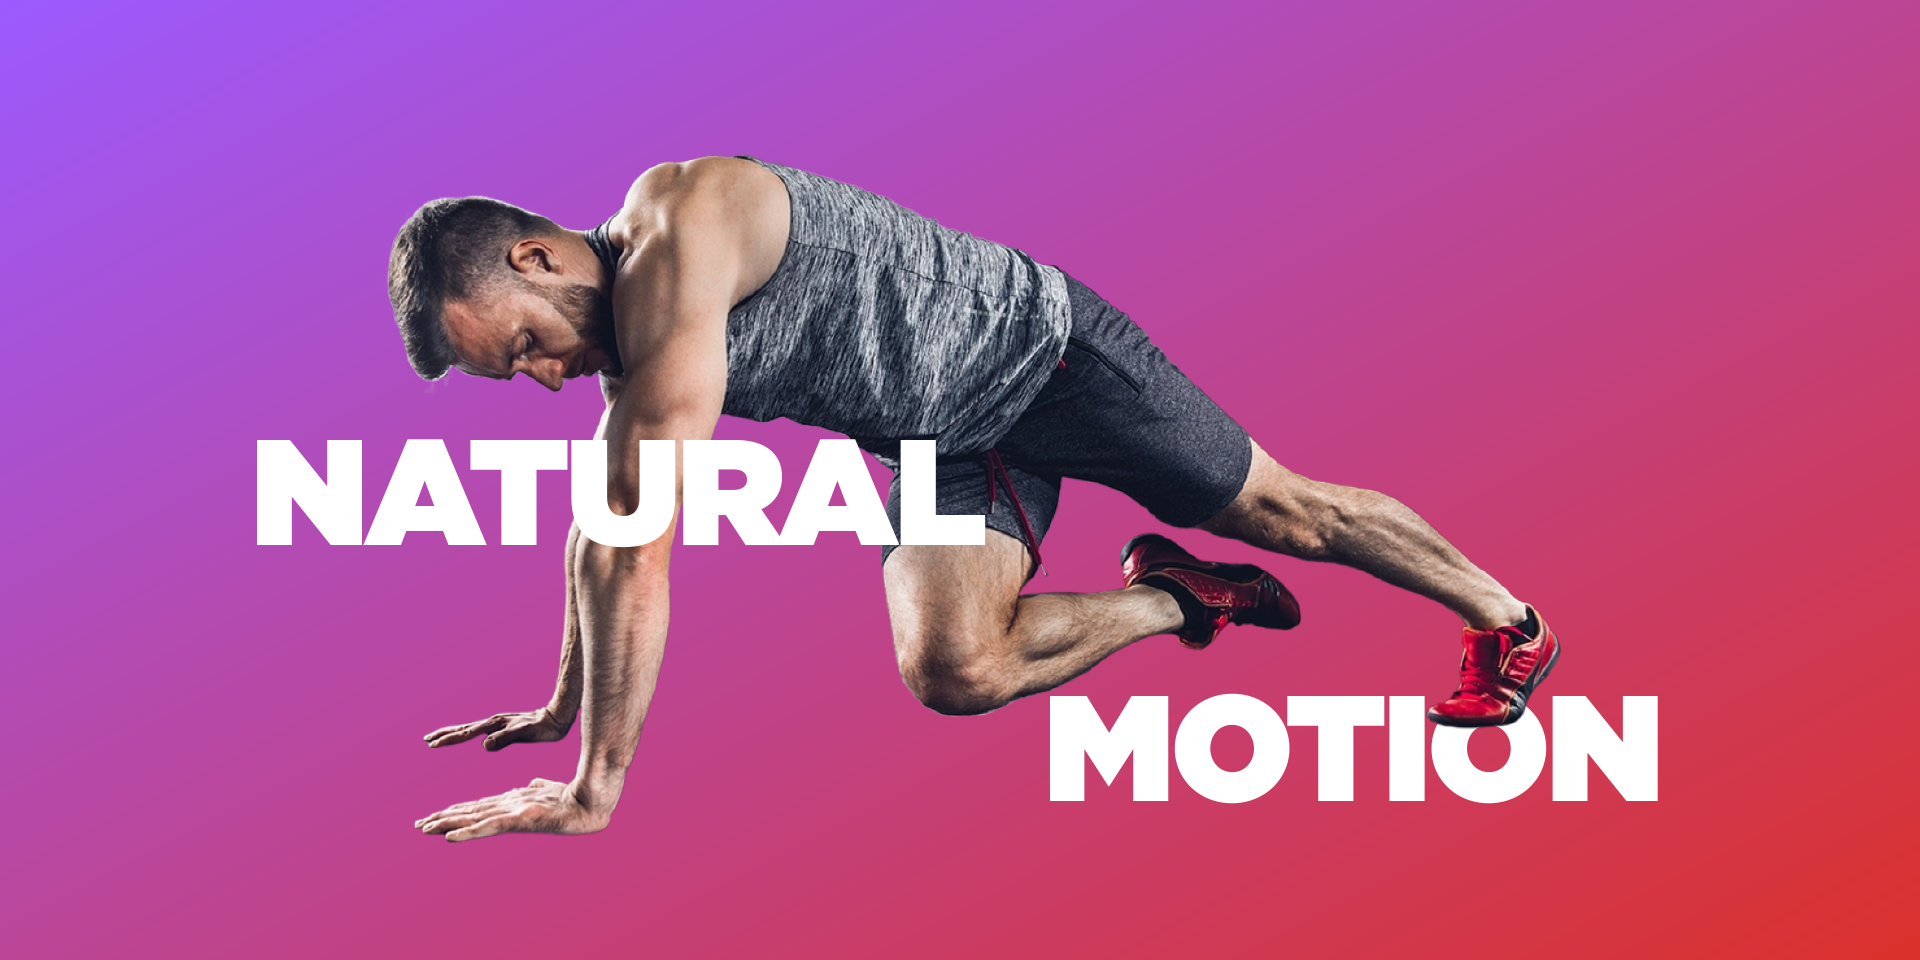 Natural Motion, Experimenta nuestra nueva clase de Natural Motion, trabaja  tu concentración y coordinación con cada sesión. Reserva tu lugar en la App  SW. *Disponible